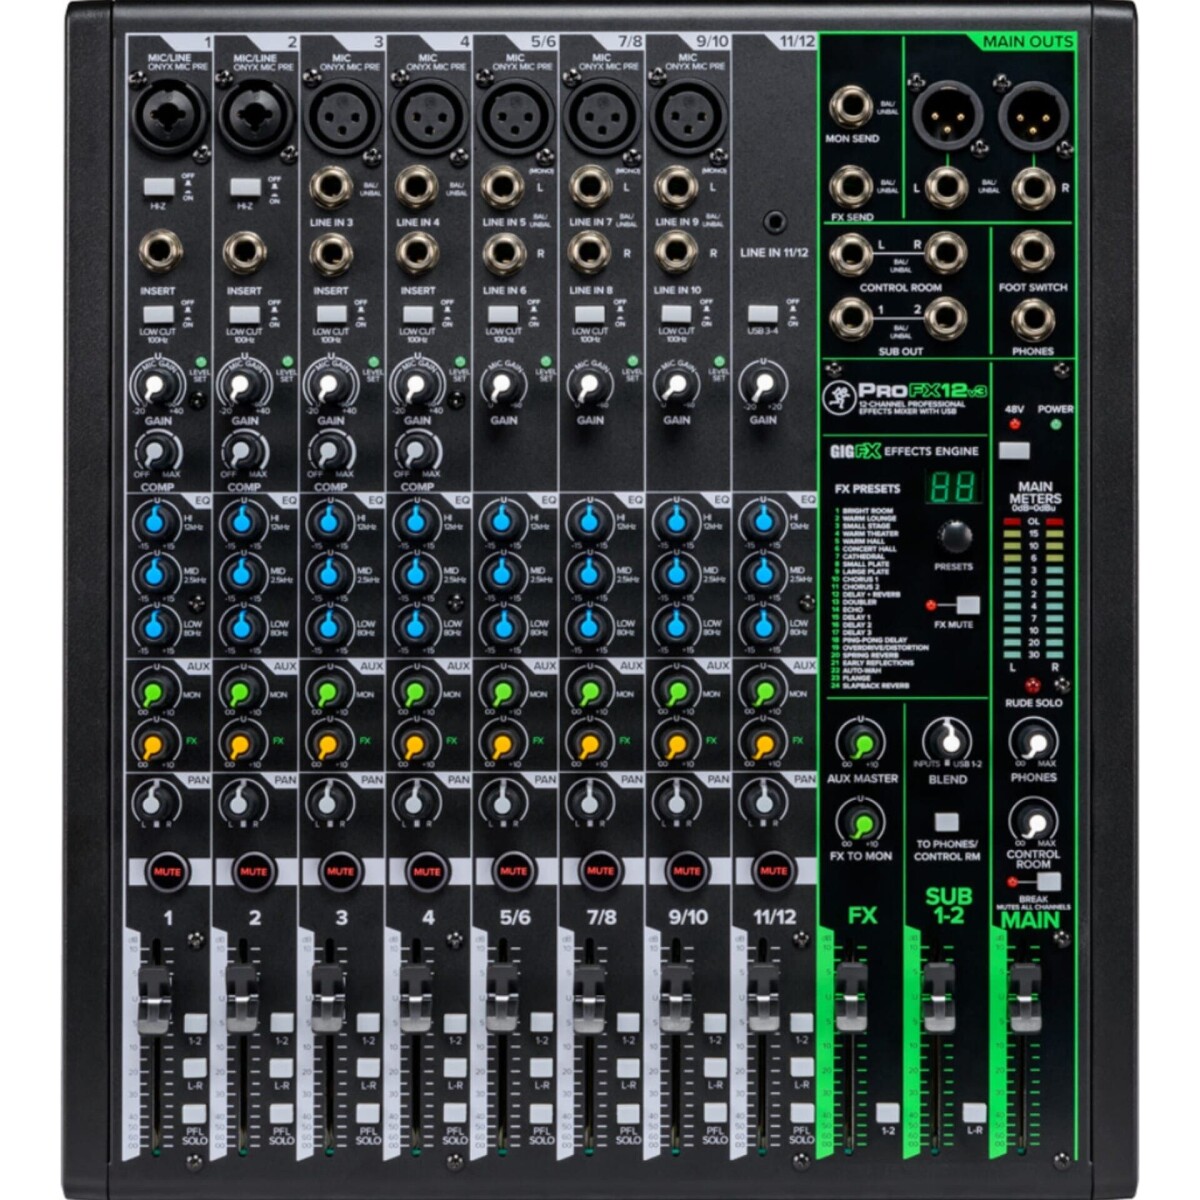 Consola Mackie Pro Fx12 V3 Mixer 12 Canales Usb Efectos 